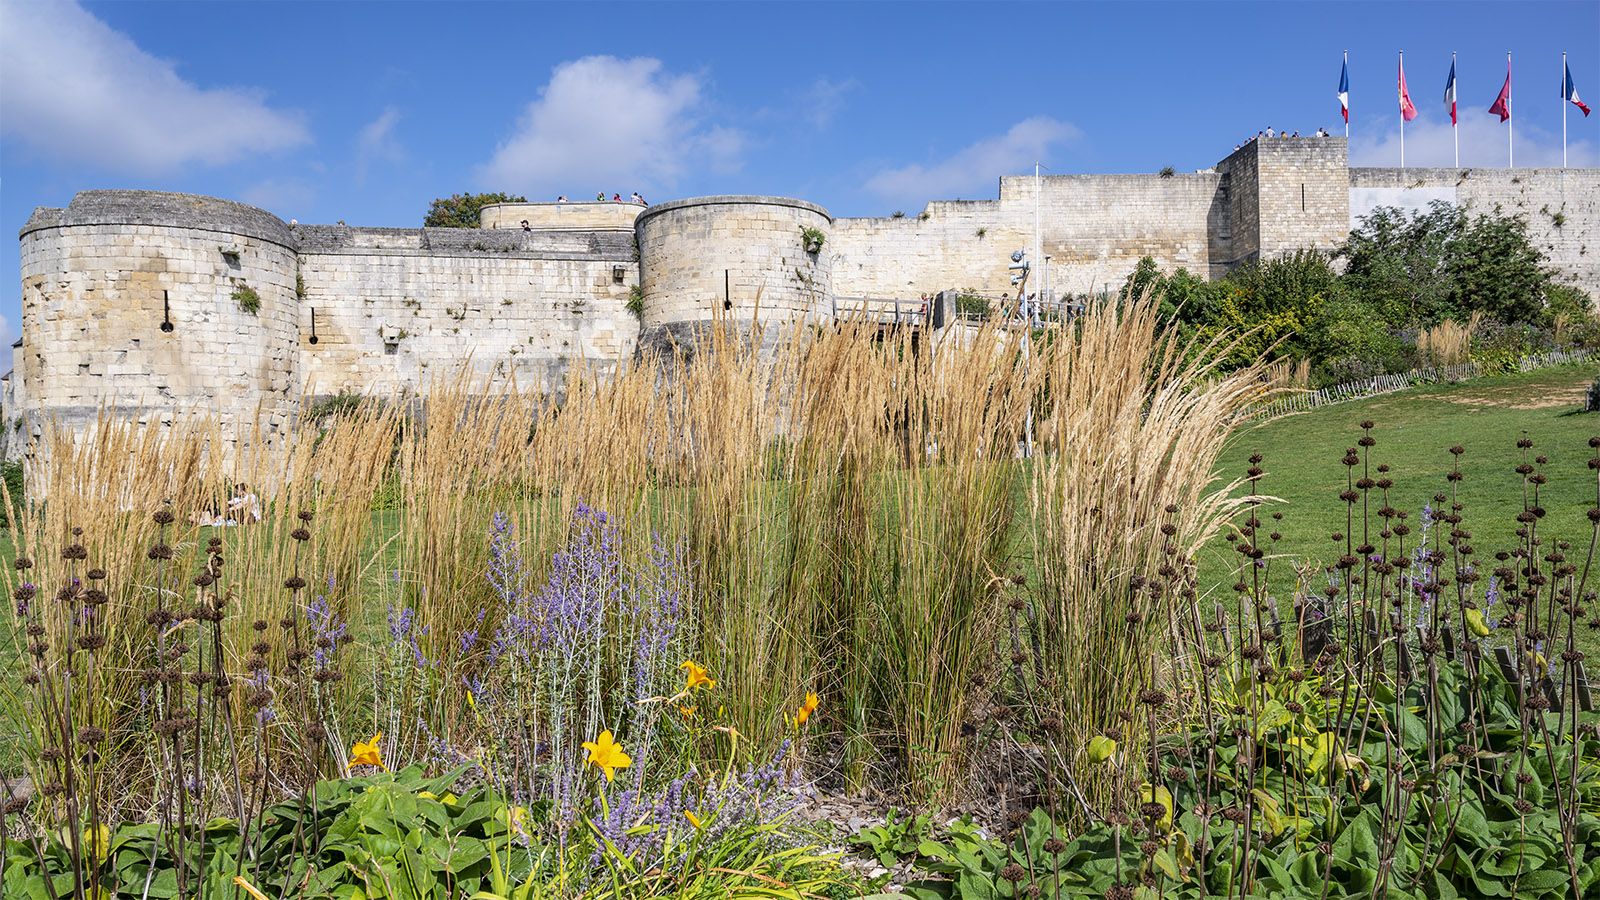 Eingebettet in Grün: die Burg von Caen. Foto: Hilke Maunder